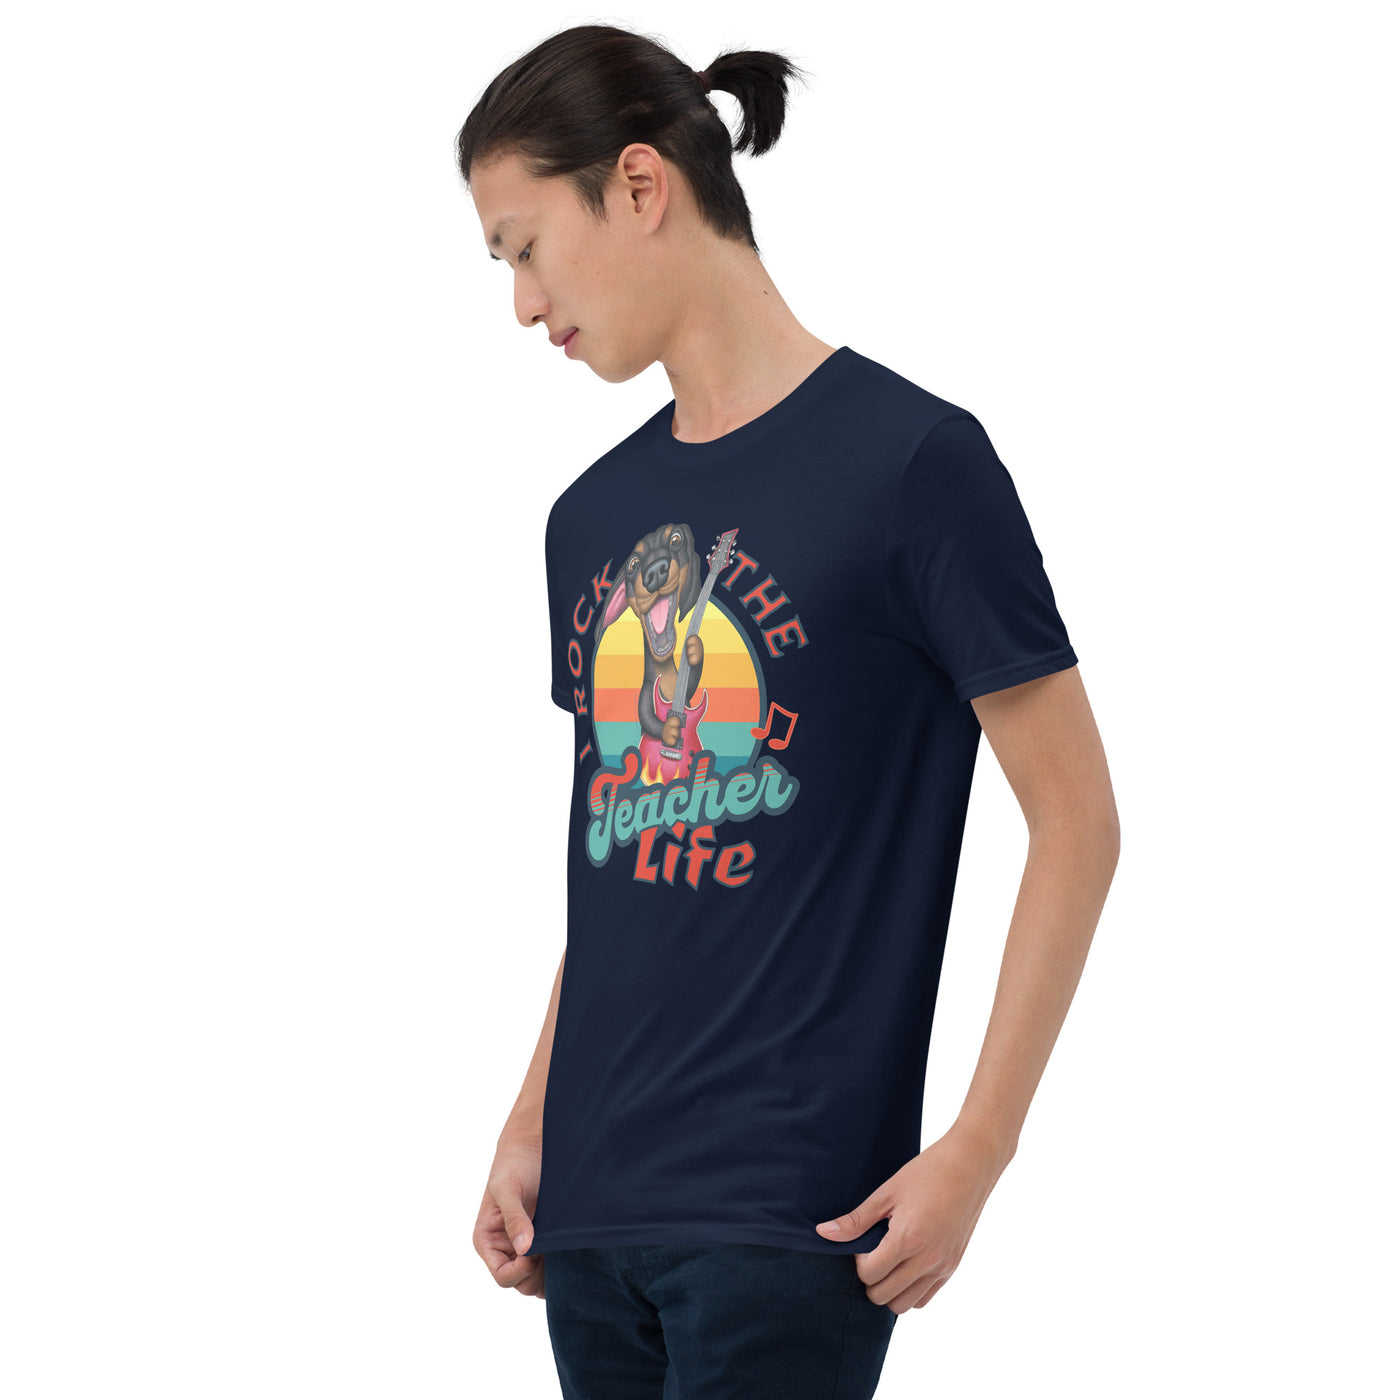 Cute Classroom tee for the teacher life on I Rock the Teacher Life Unisex T-Shirt